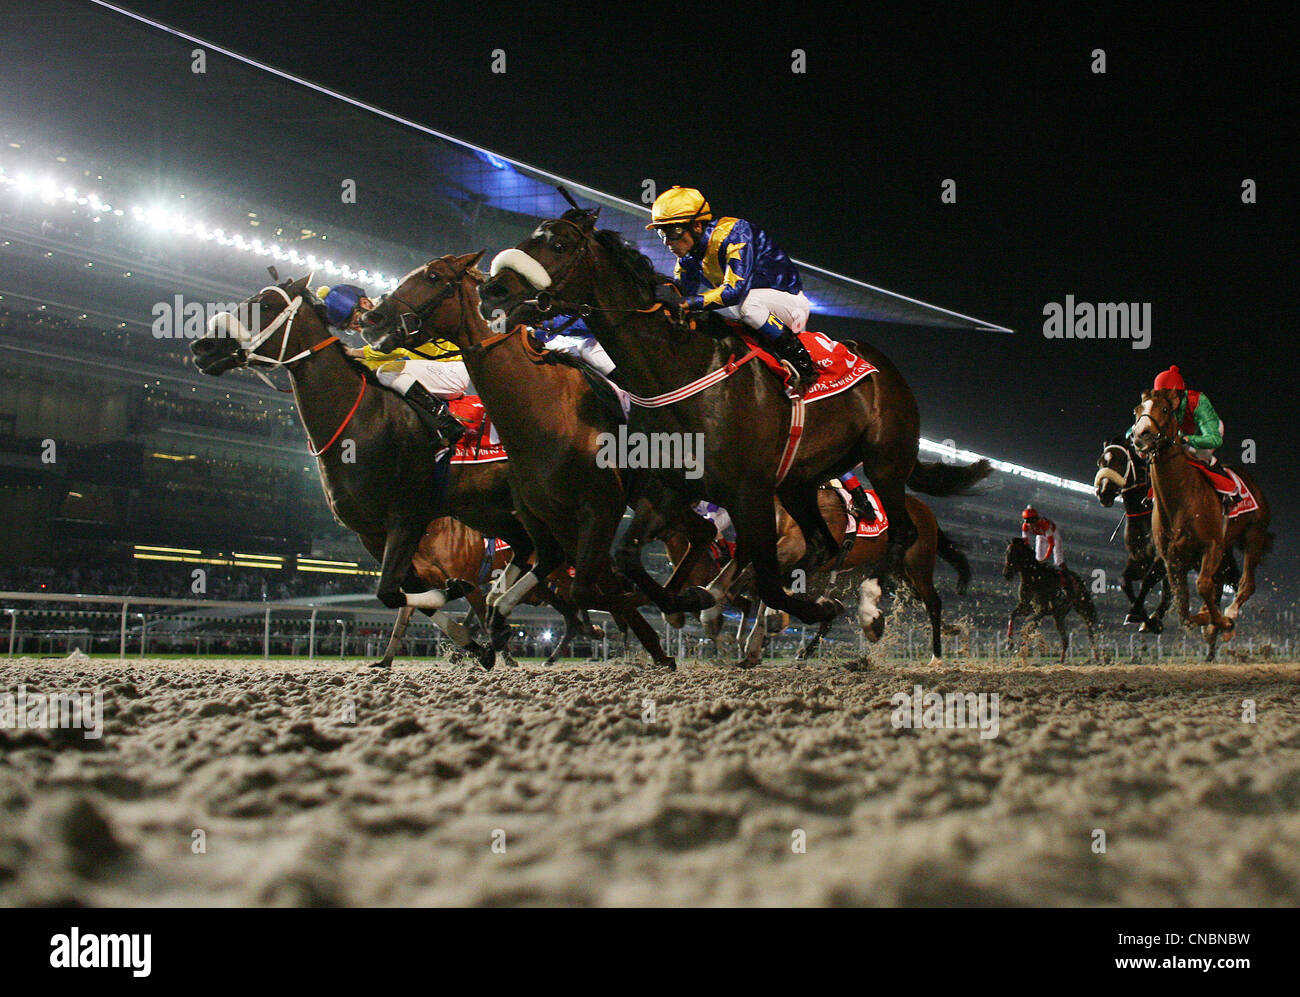 Cavalli e fantini sul Meydan cavallo di razza in via, Dubai, UAE Foto Stock